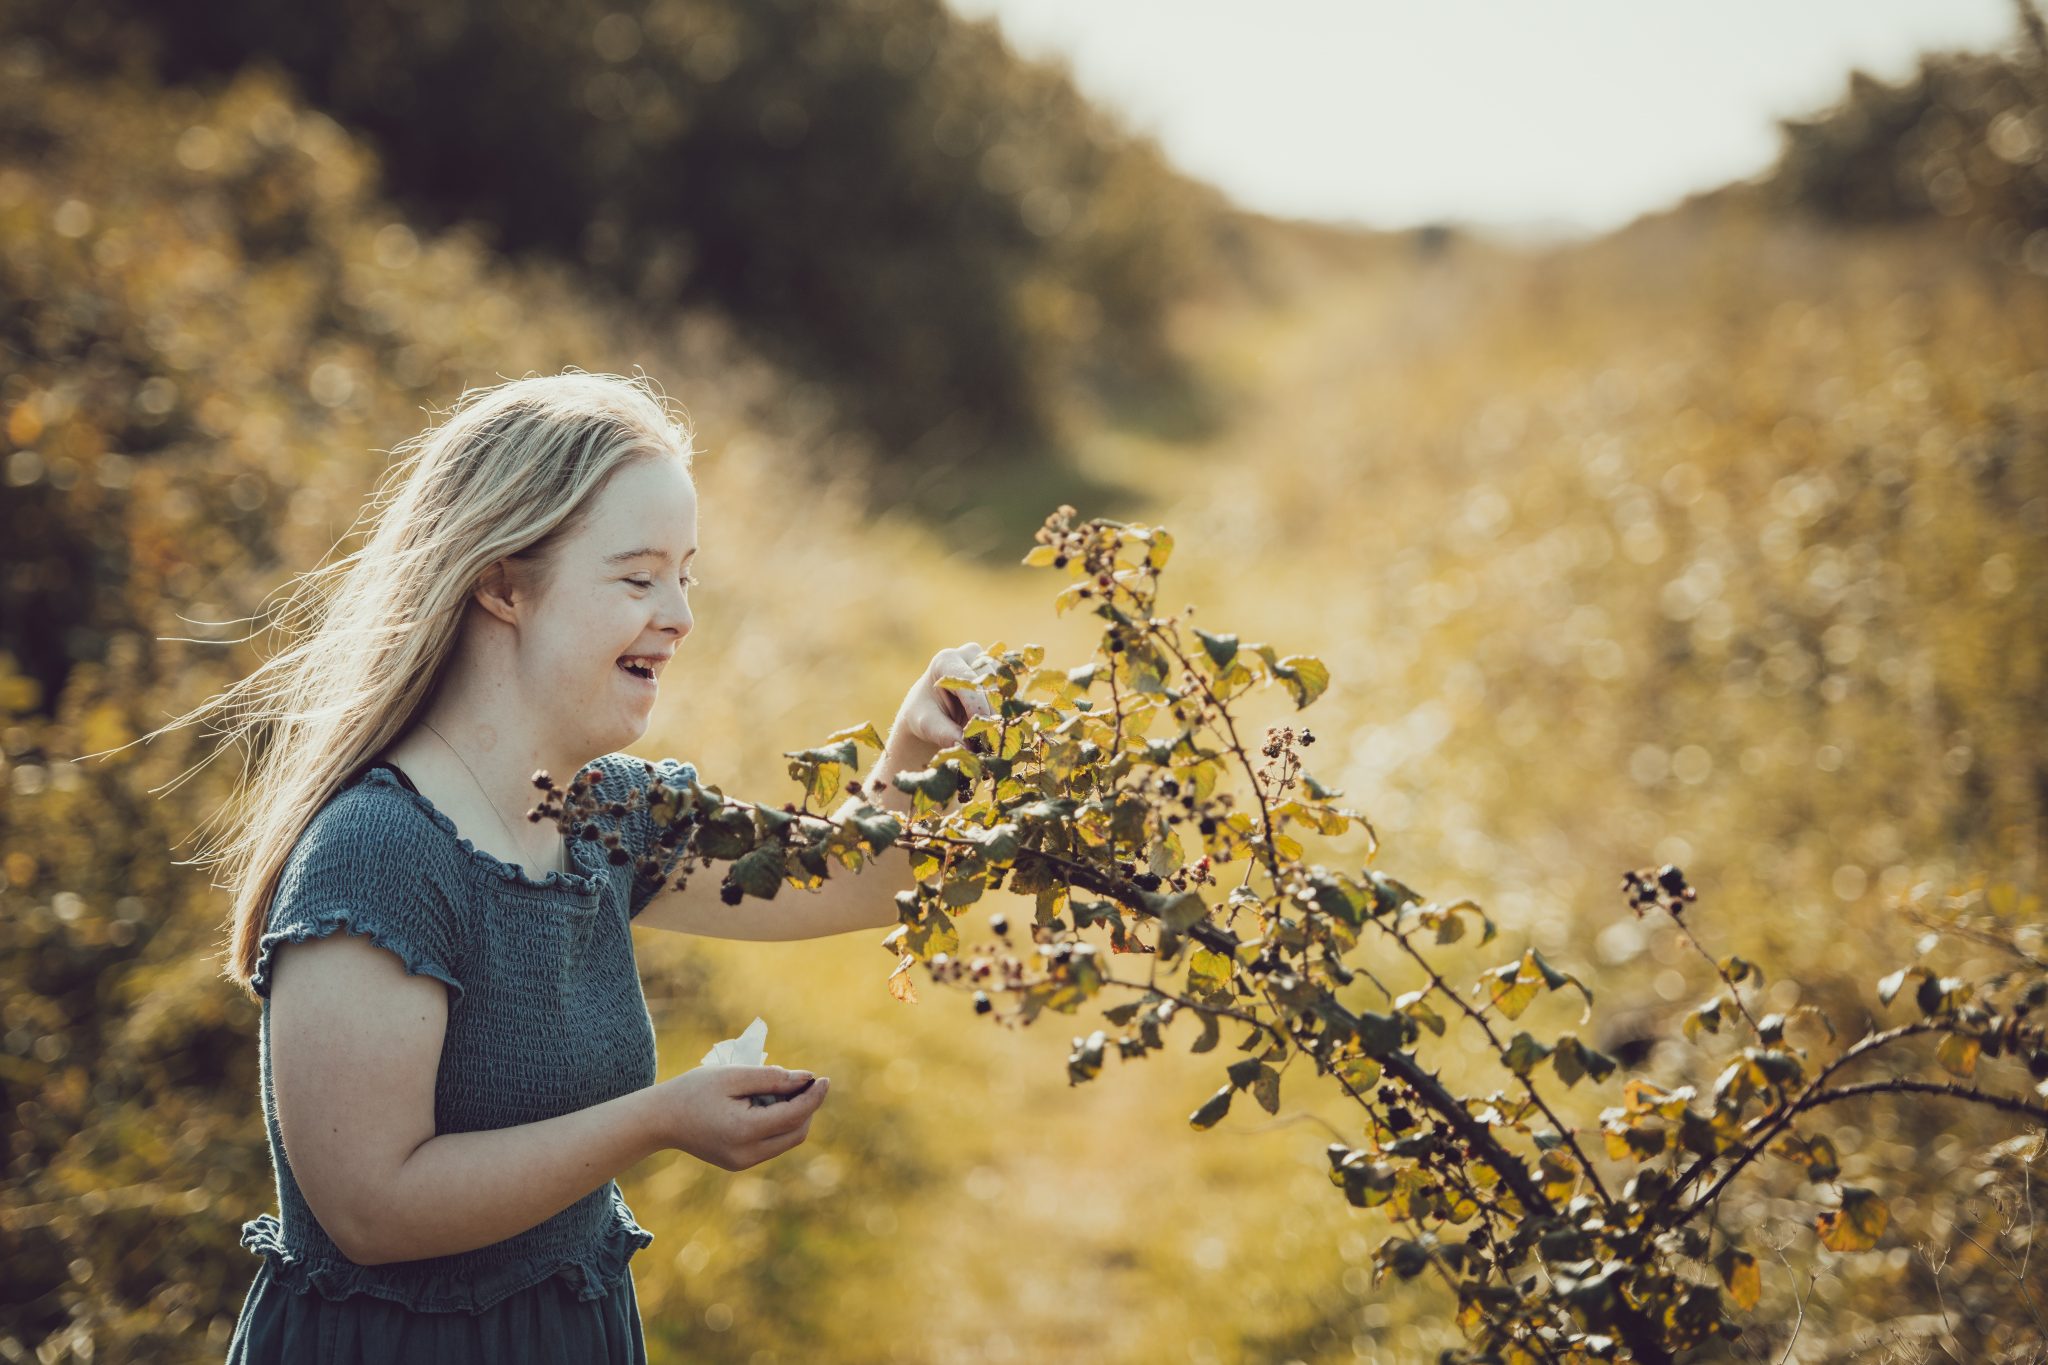 A girl picking blackberries